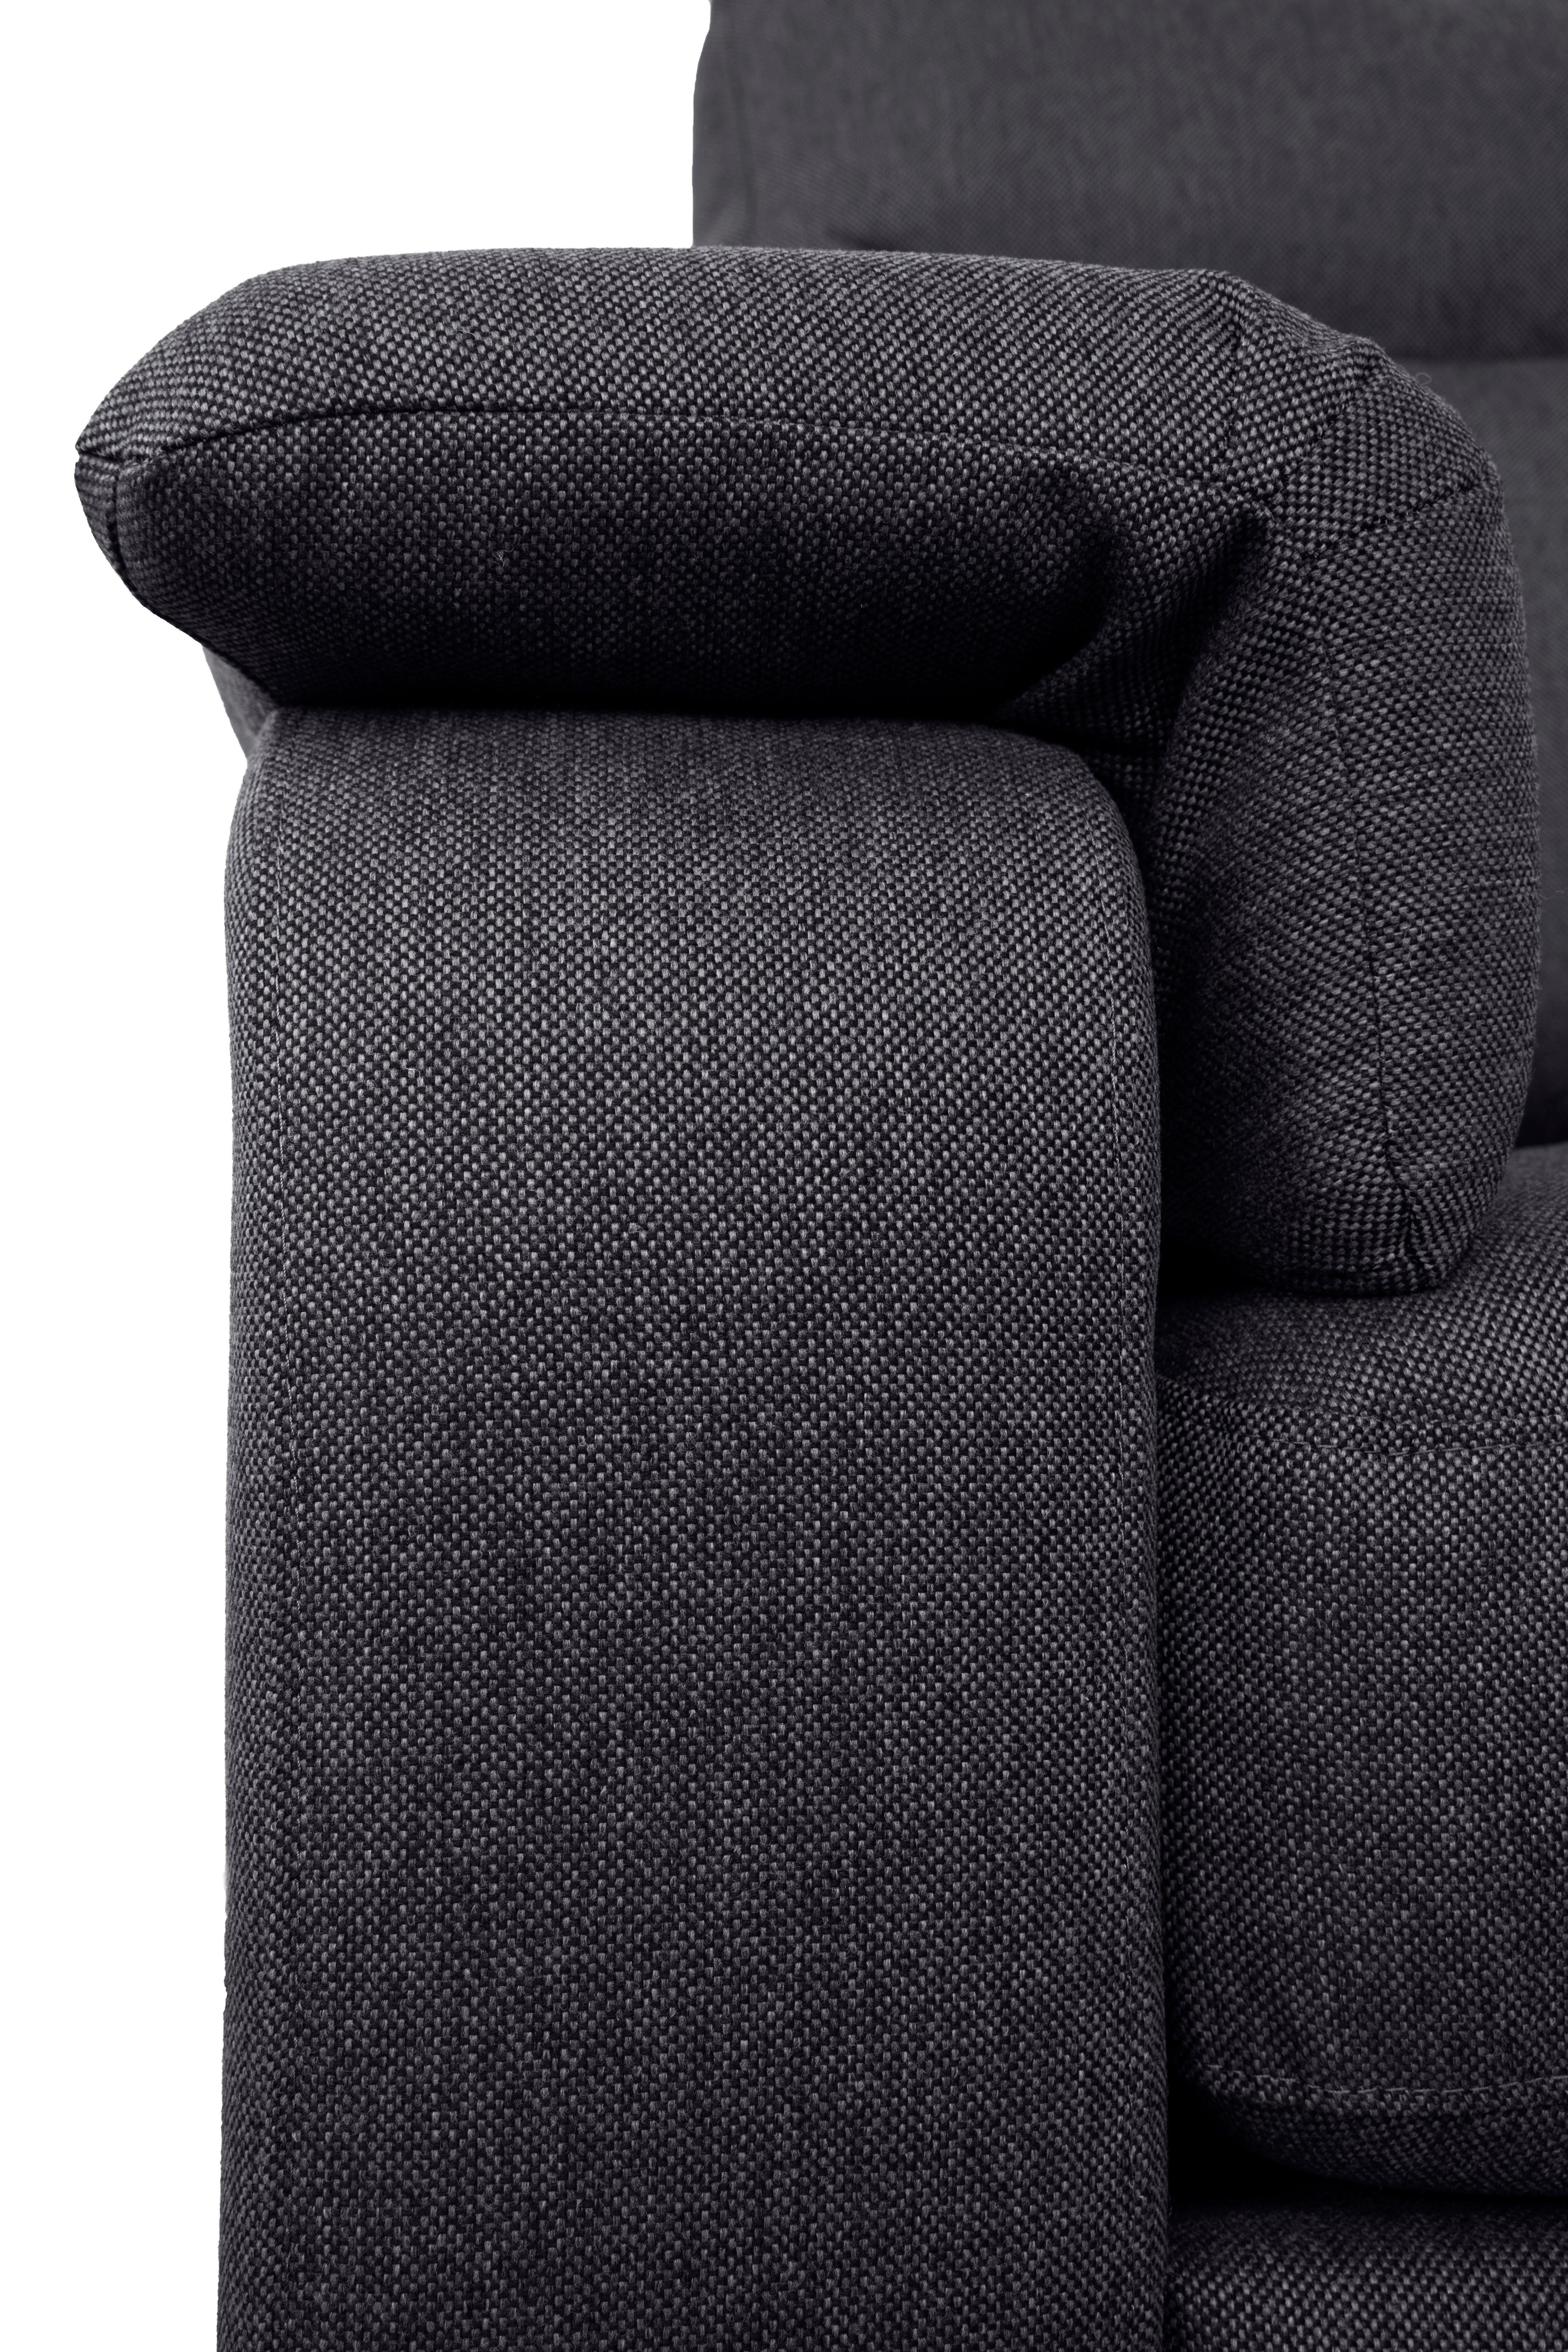 Home affaire 3-Sitzer Bécourt, mit Wellenunterfederung Nähten hoher und Rückenlehne, anthracite mit dekorativen